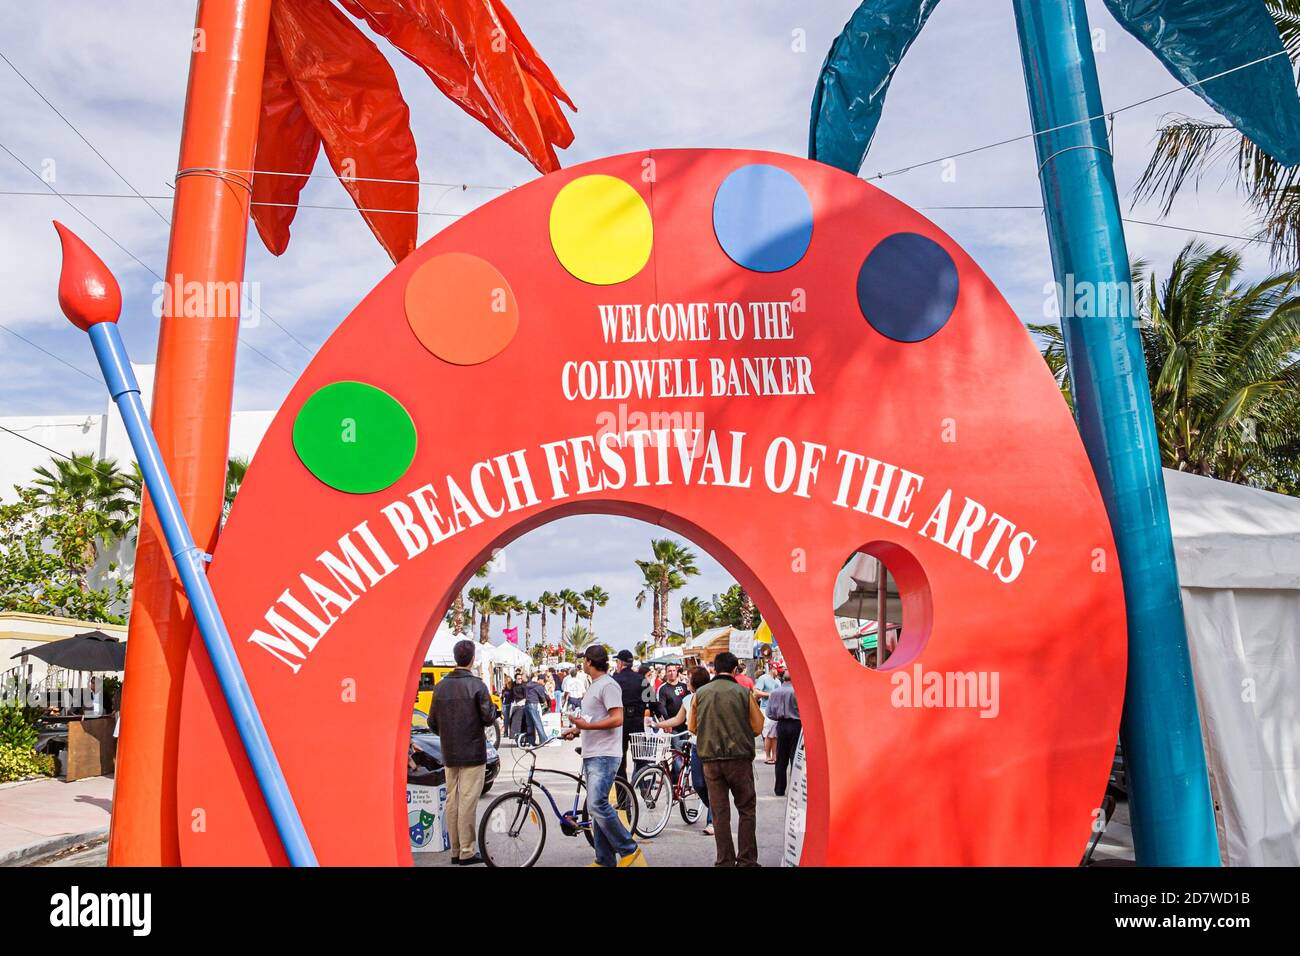 Miami Beach Florida,Festival of the Arts,ingresso arco segno strada fiera annuale evento arte arte, Foto Stock